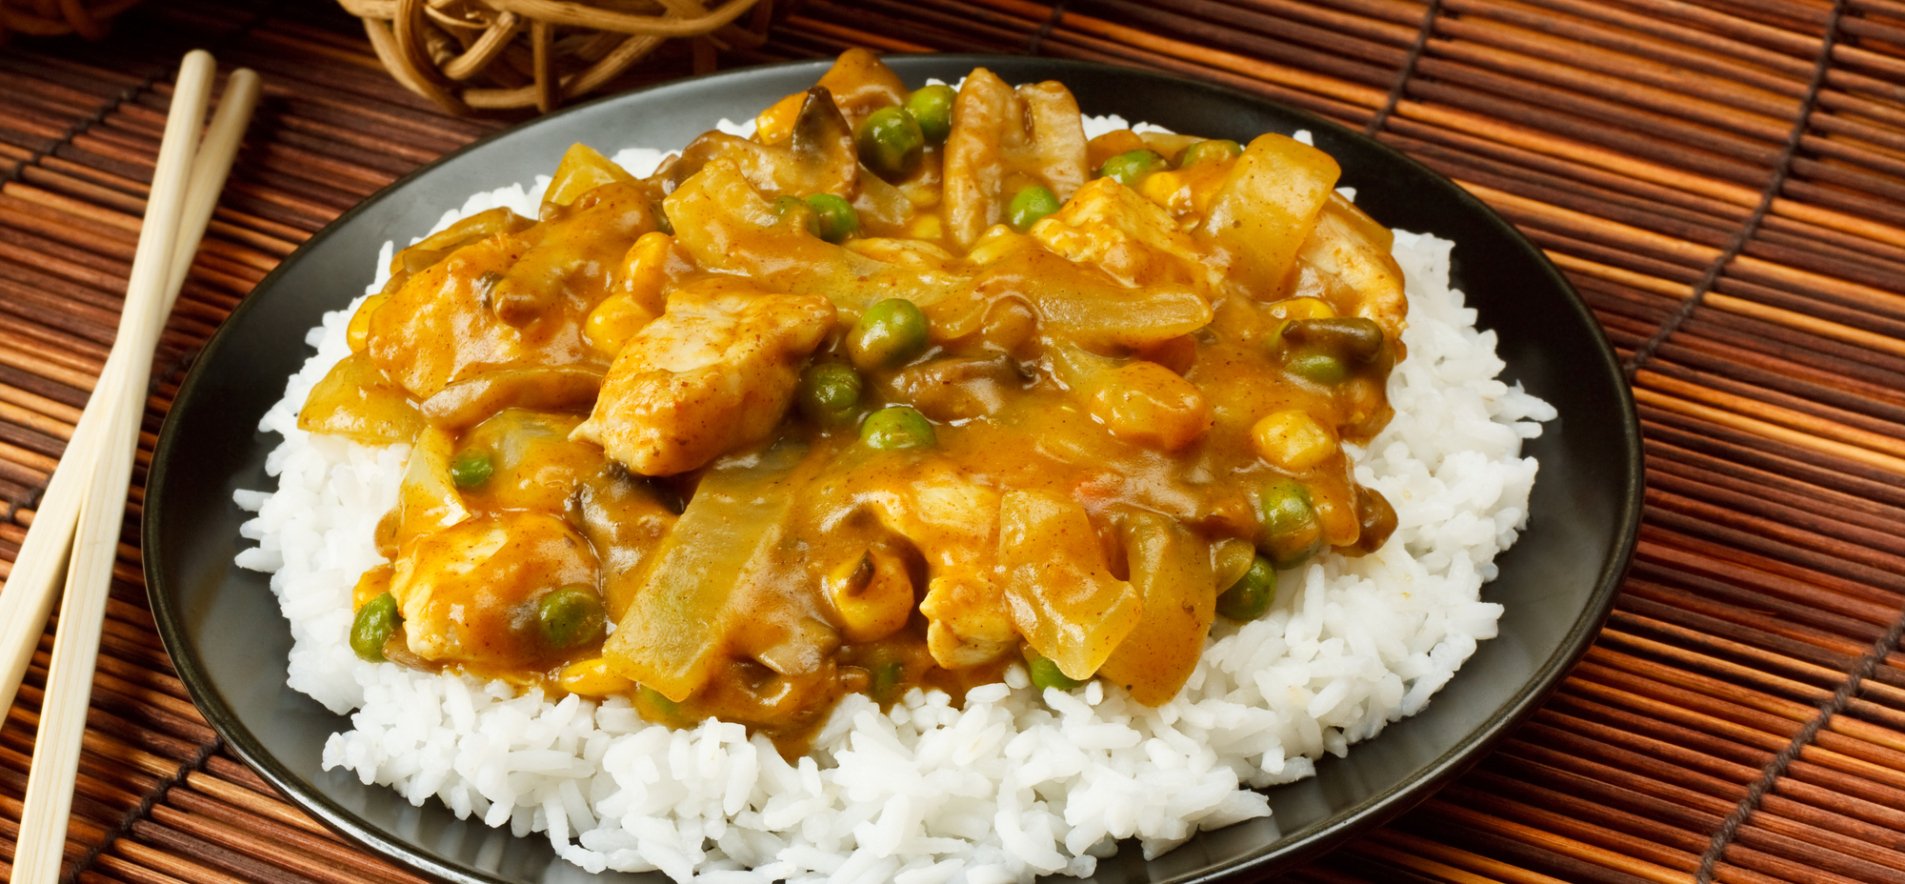 Как приготовить курицу карри с рисом по-японски?